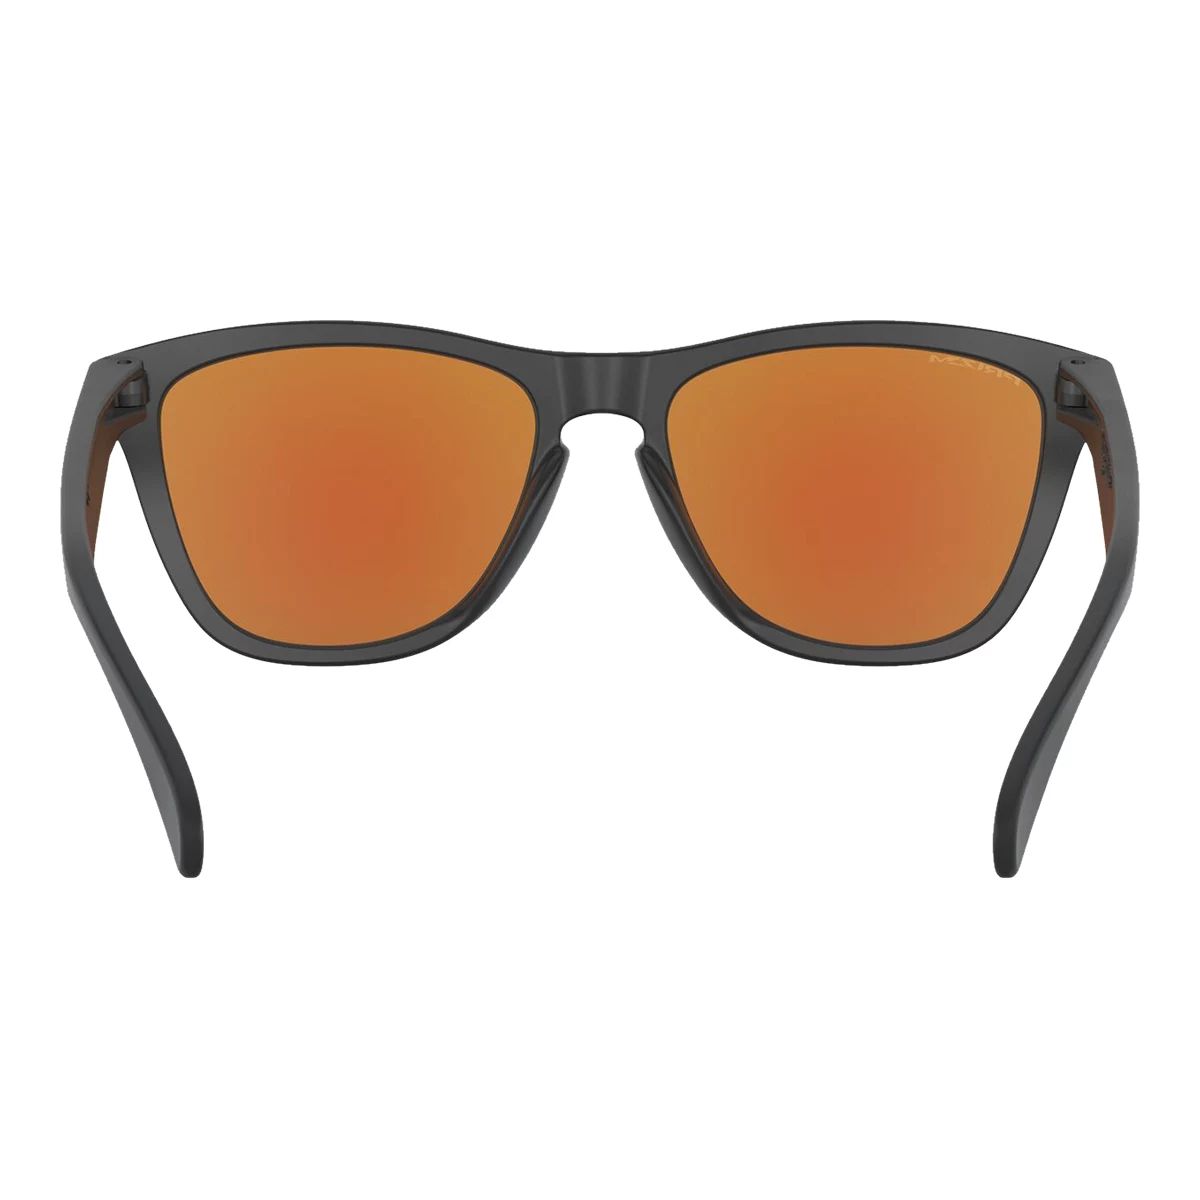 Oakley Men's/Women's Frogskins Wayfarer Sunglasses